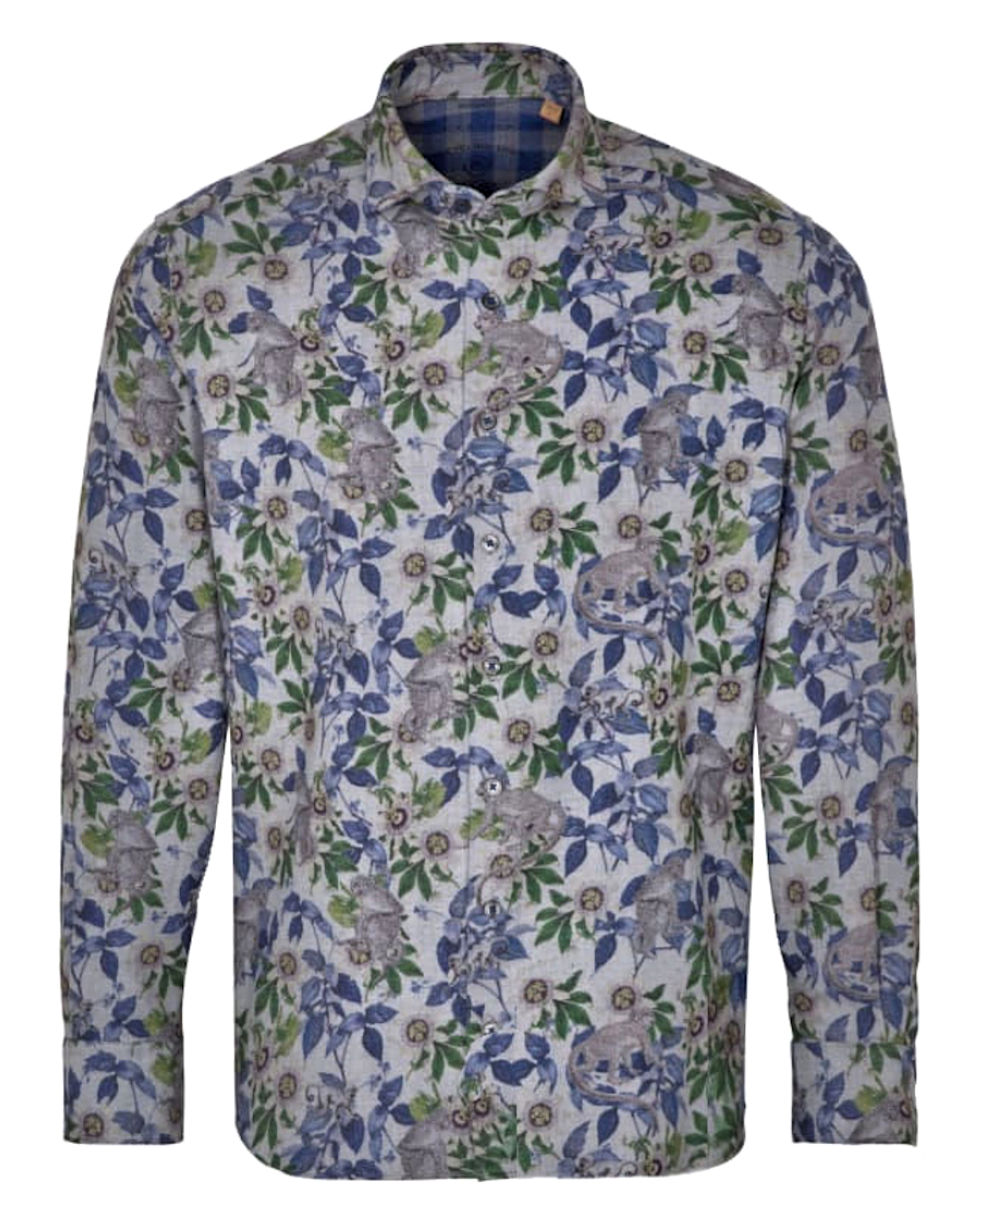 eterna Langarmhemd Oxford grau blau grün Dschungel Print UPCYCLING SHIRT -  Hochwertige Herrenmode führender Marken zu fairen